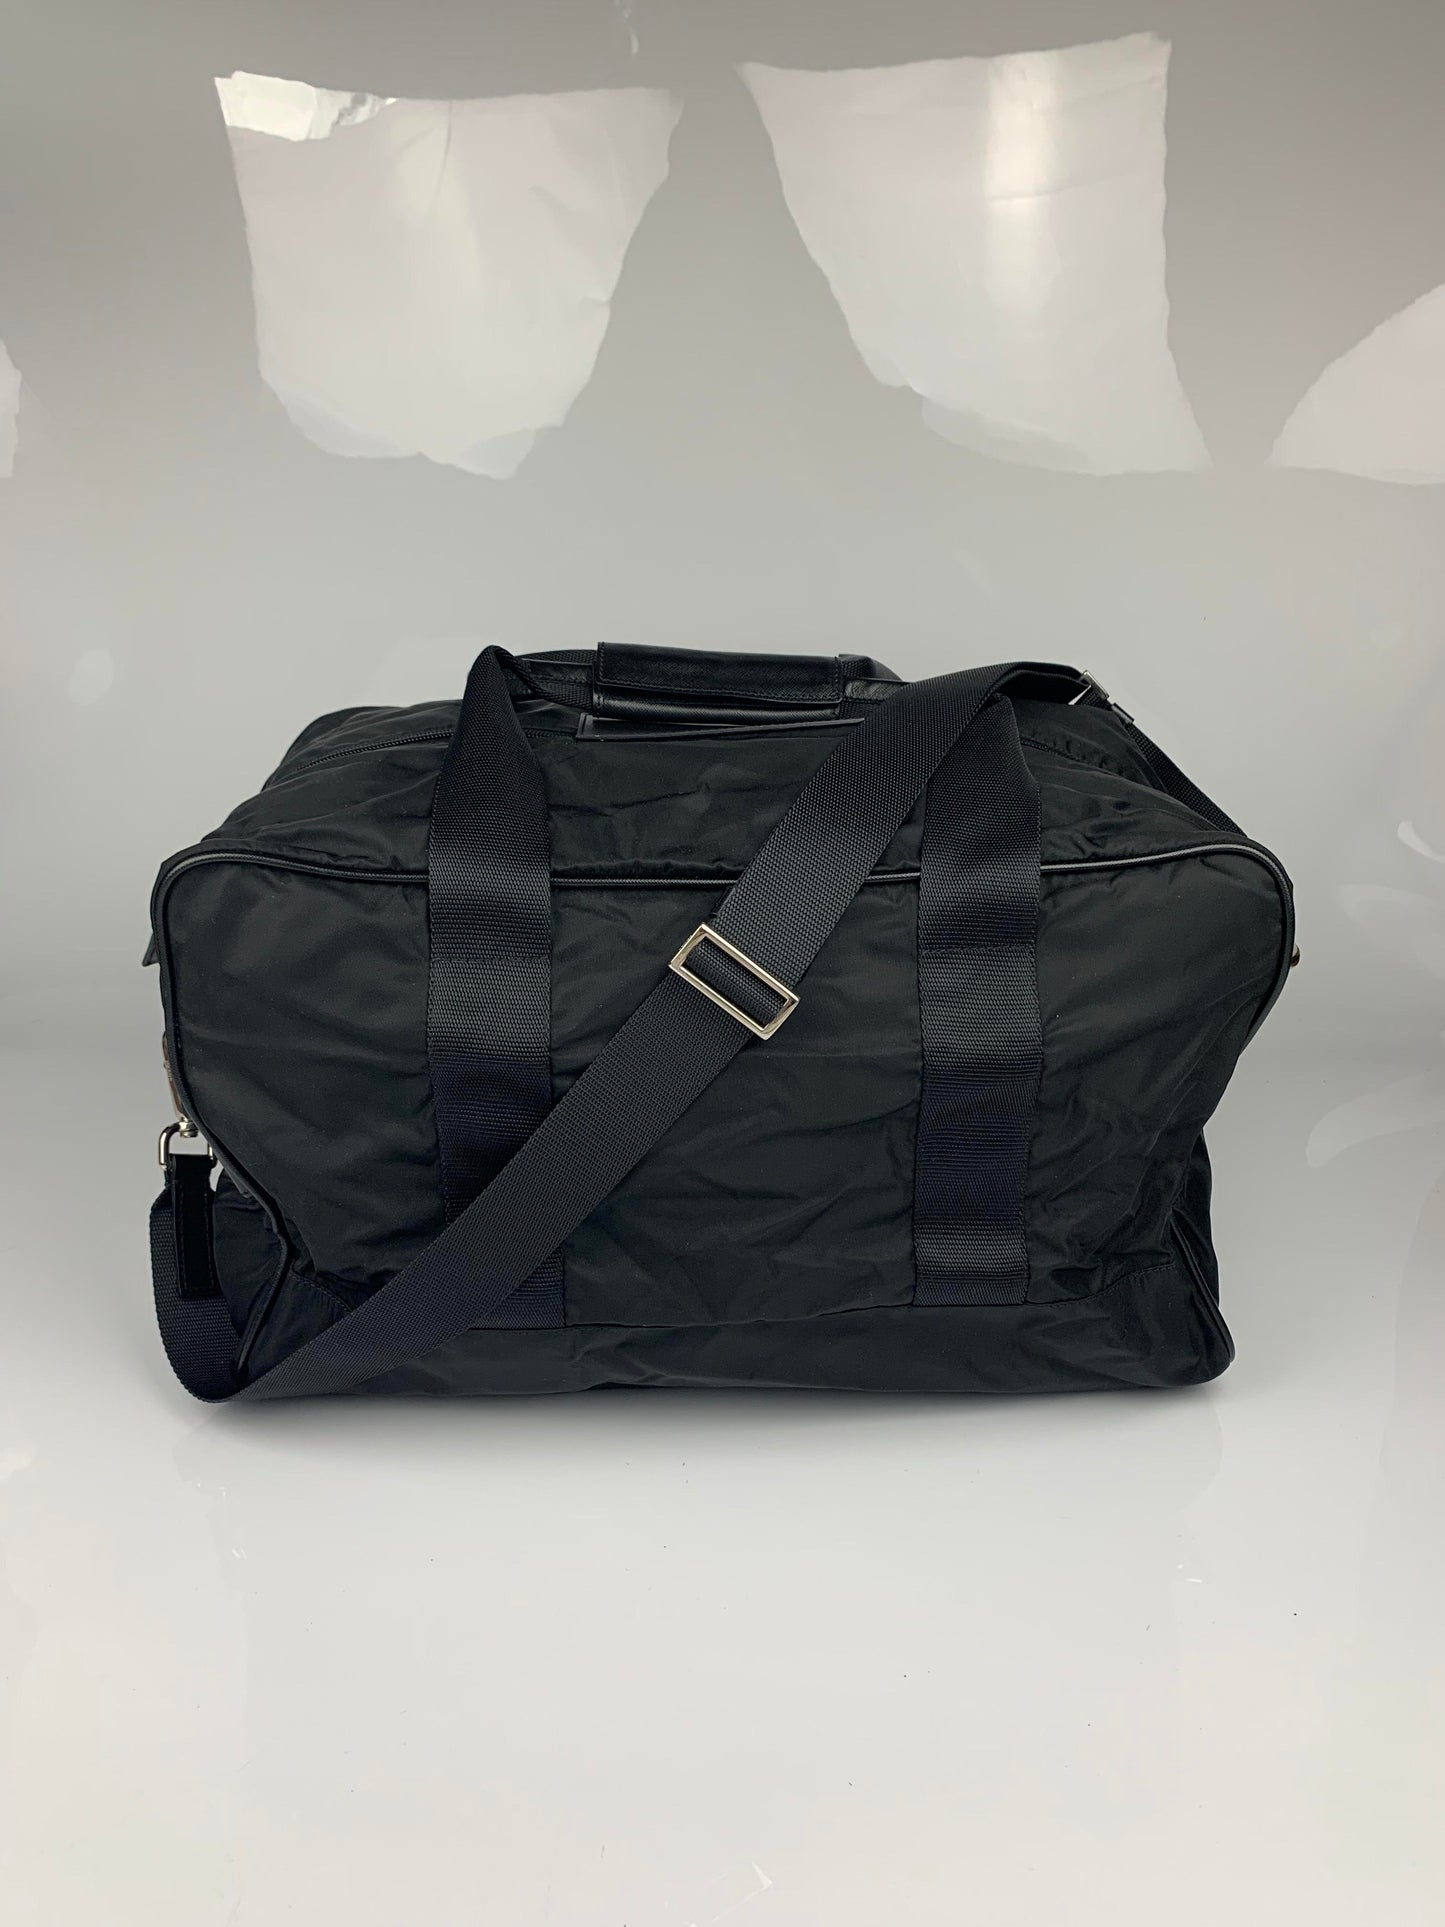 Prada Black Saffiano Travel Gym Duffle Bag